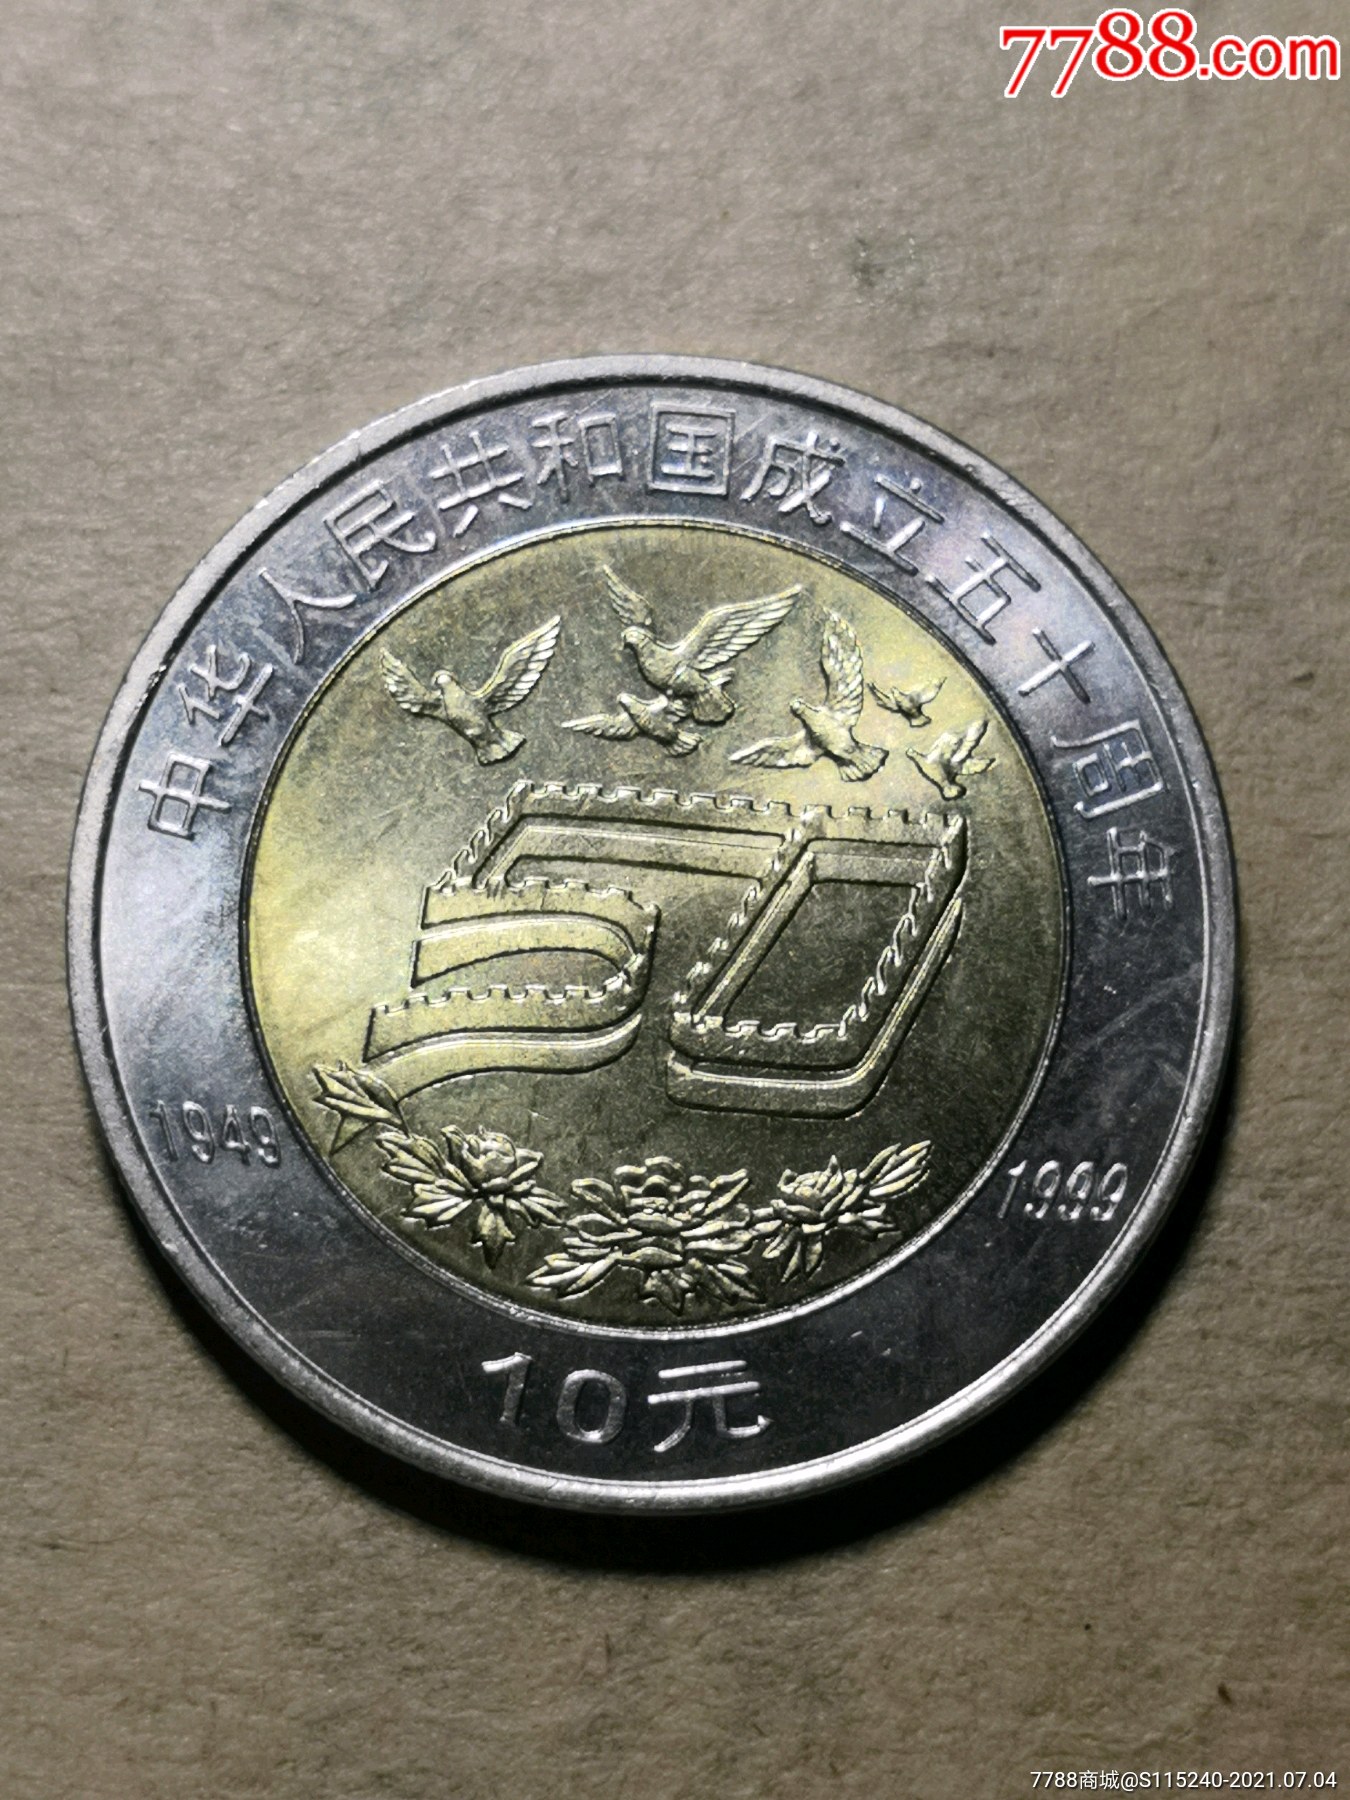 【1999年普通纪念币,中华人民共和国成立五十周年10元硬币】r016